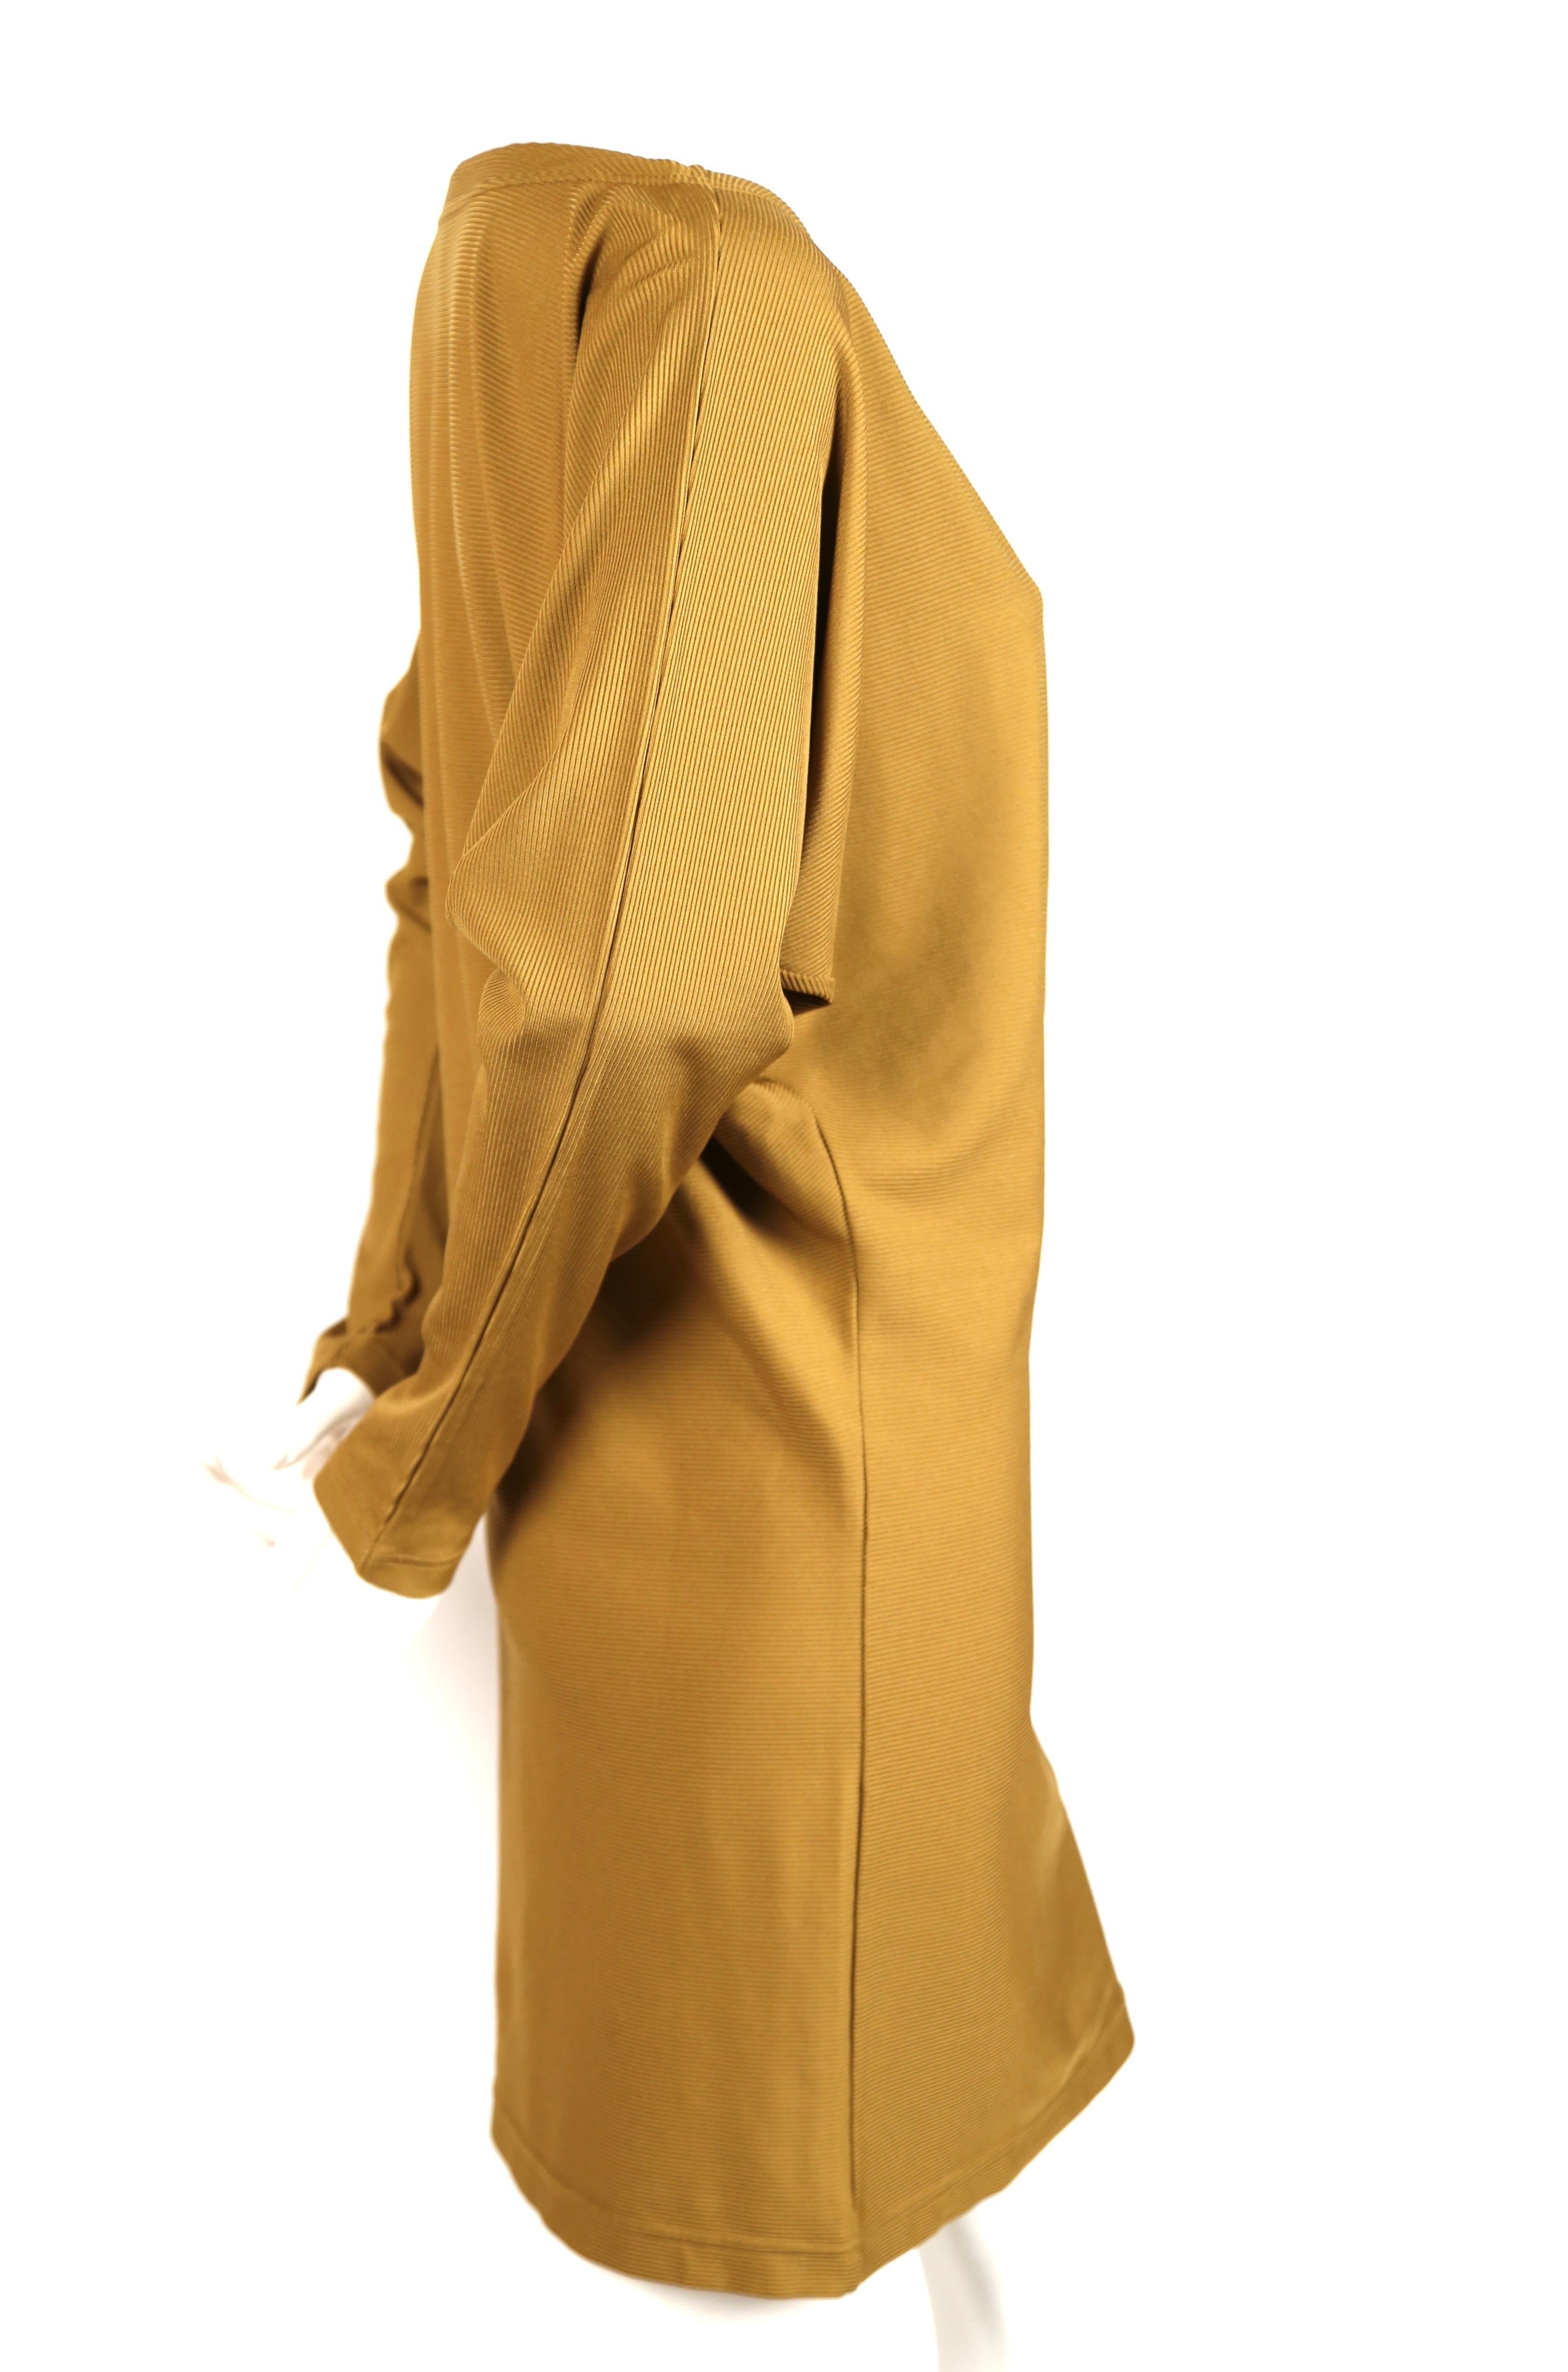 Tunique ou robe en côtes à manches dolman conçue par Issey Miyake. Labellisé taille moyenne. Mesures approximatives (non étiré) : buste 44